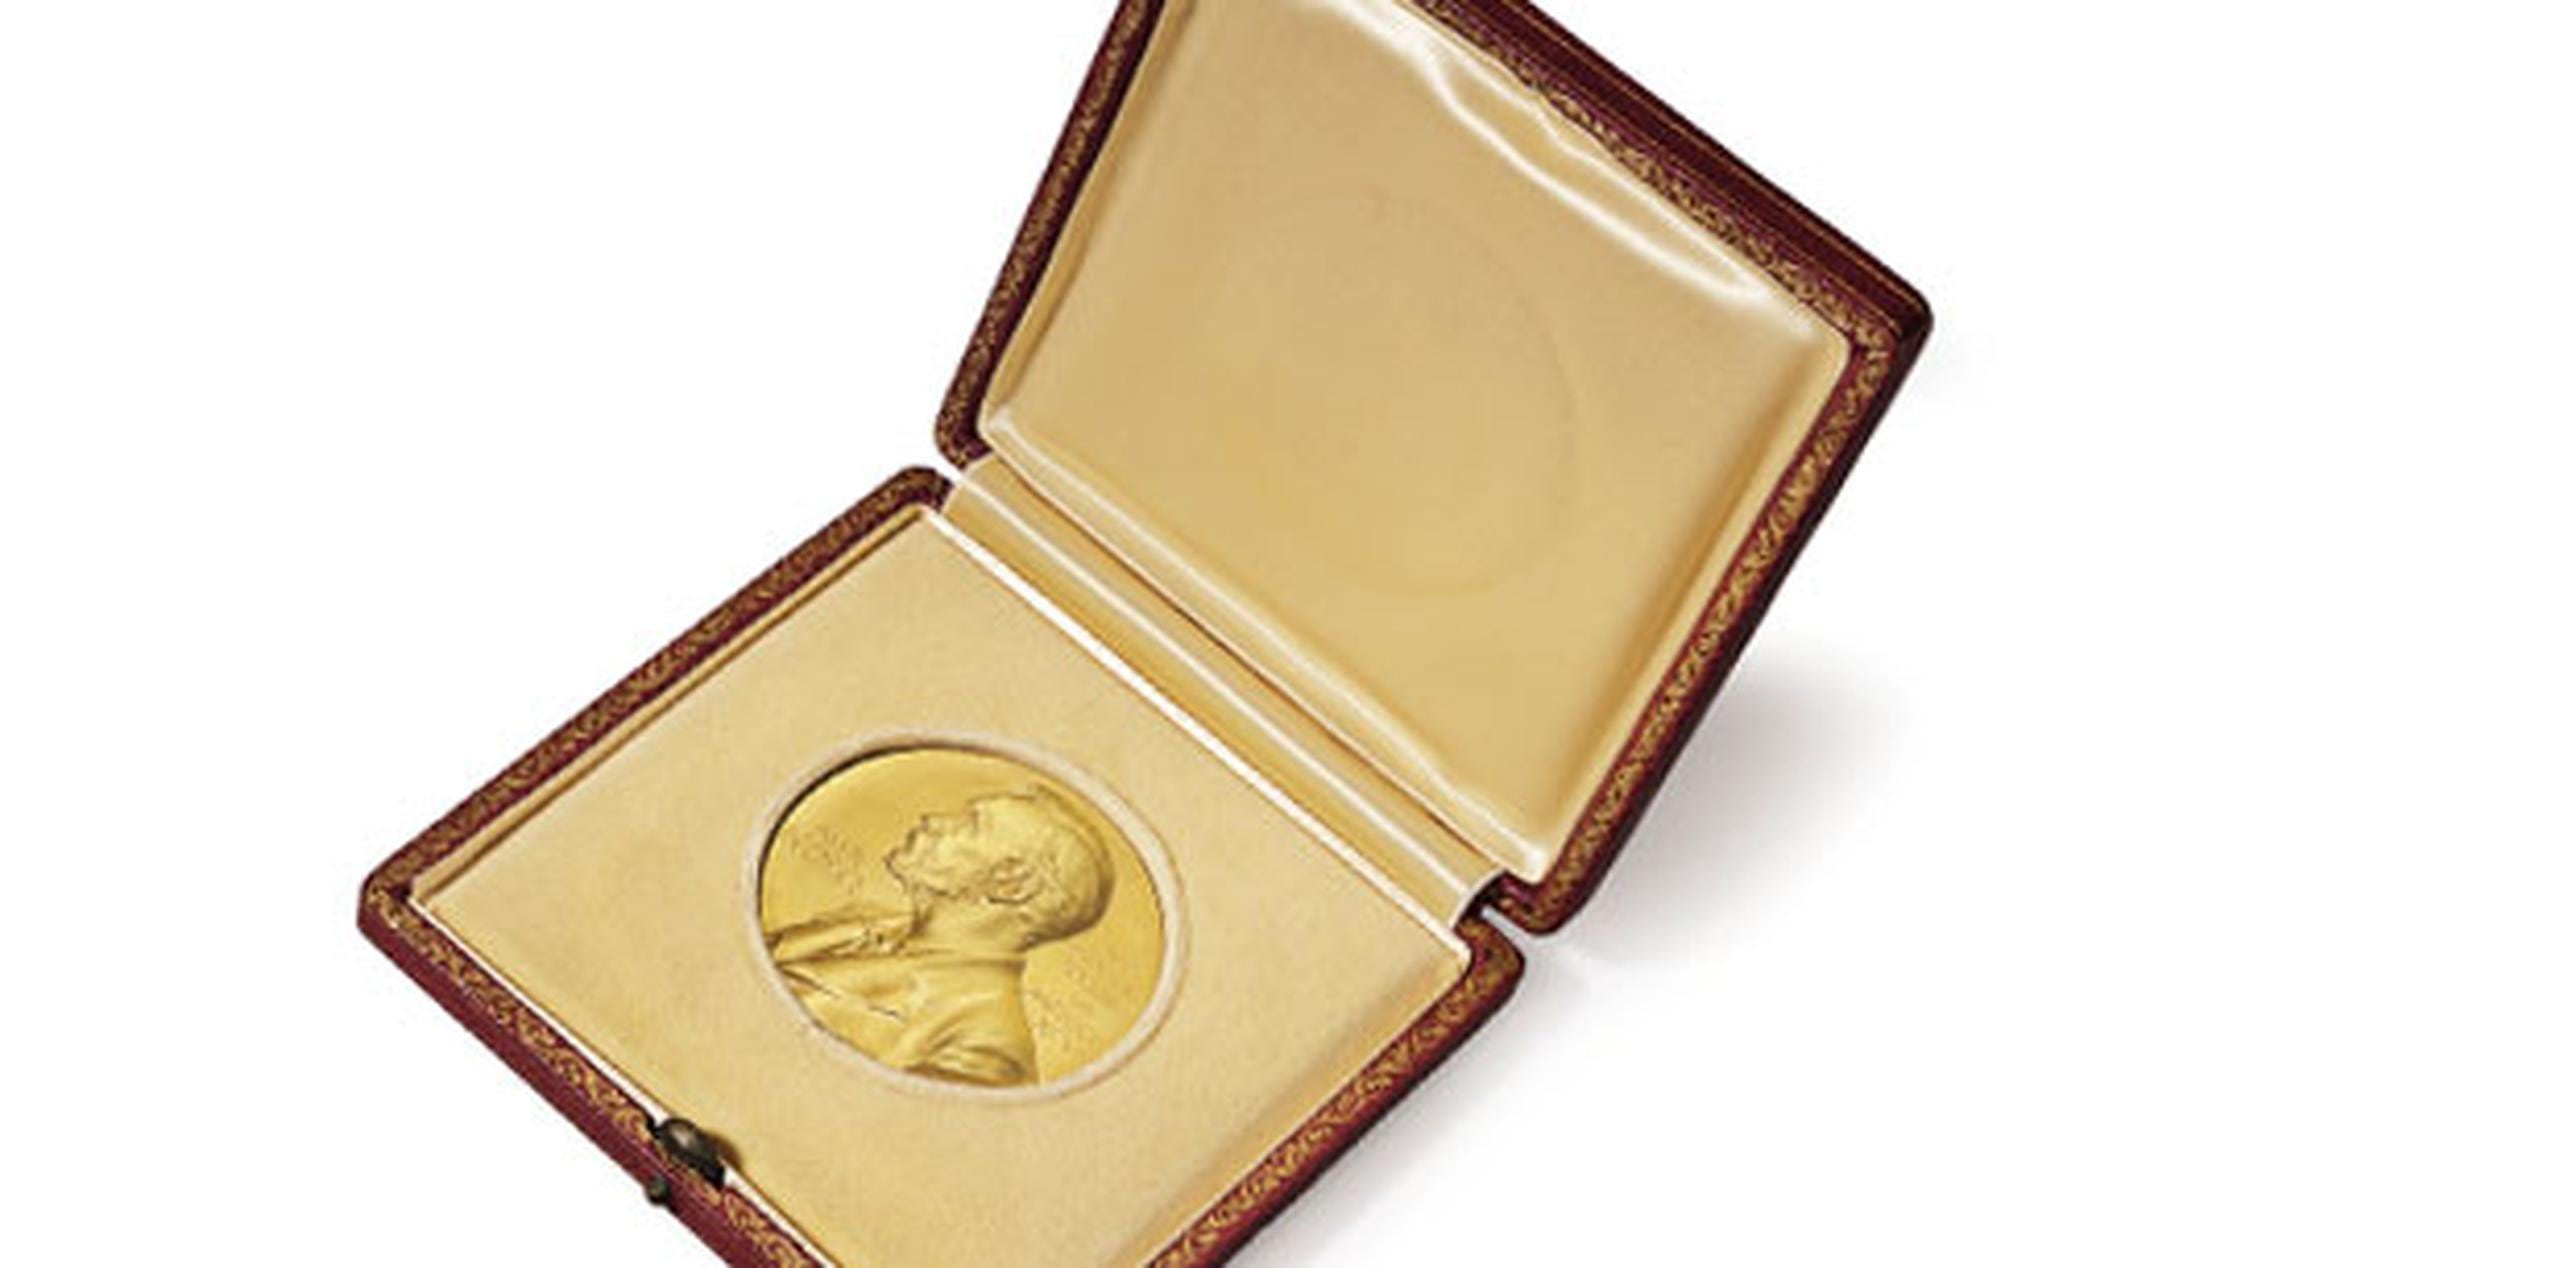 La medalla de oro que Watson obtuvo en 1962 y varios históricos documentos propiedad de Watson serán puestos a la venta el próximo jueves por la casa Christies de Nueva York, que espera recaudar entre 2.5 y 3.5 millones de dólares. (AP)